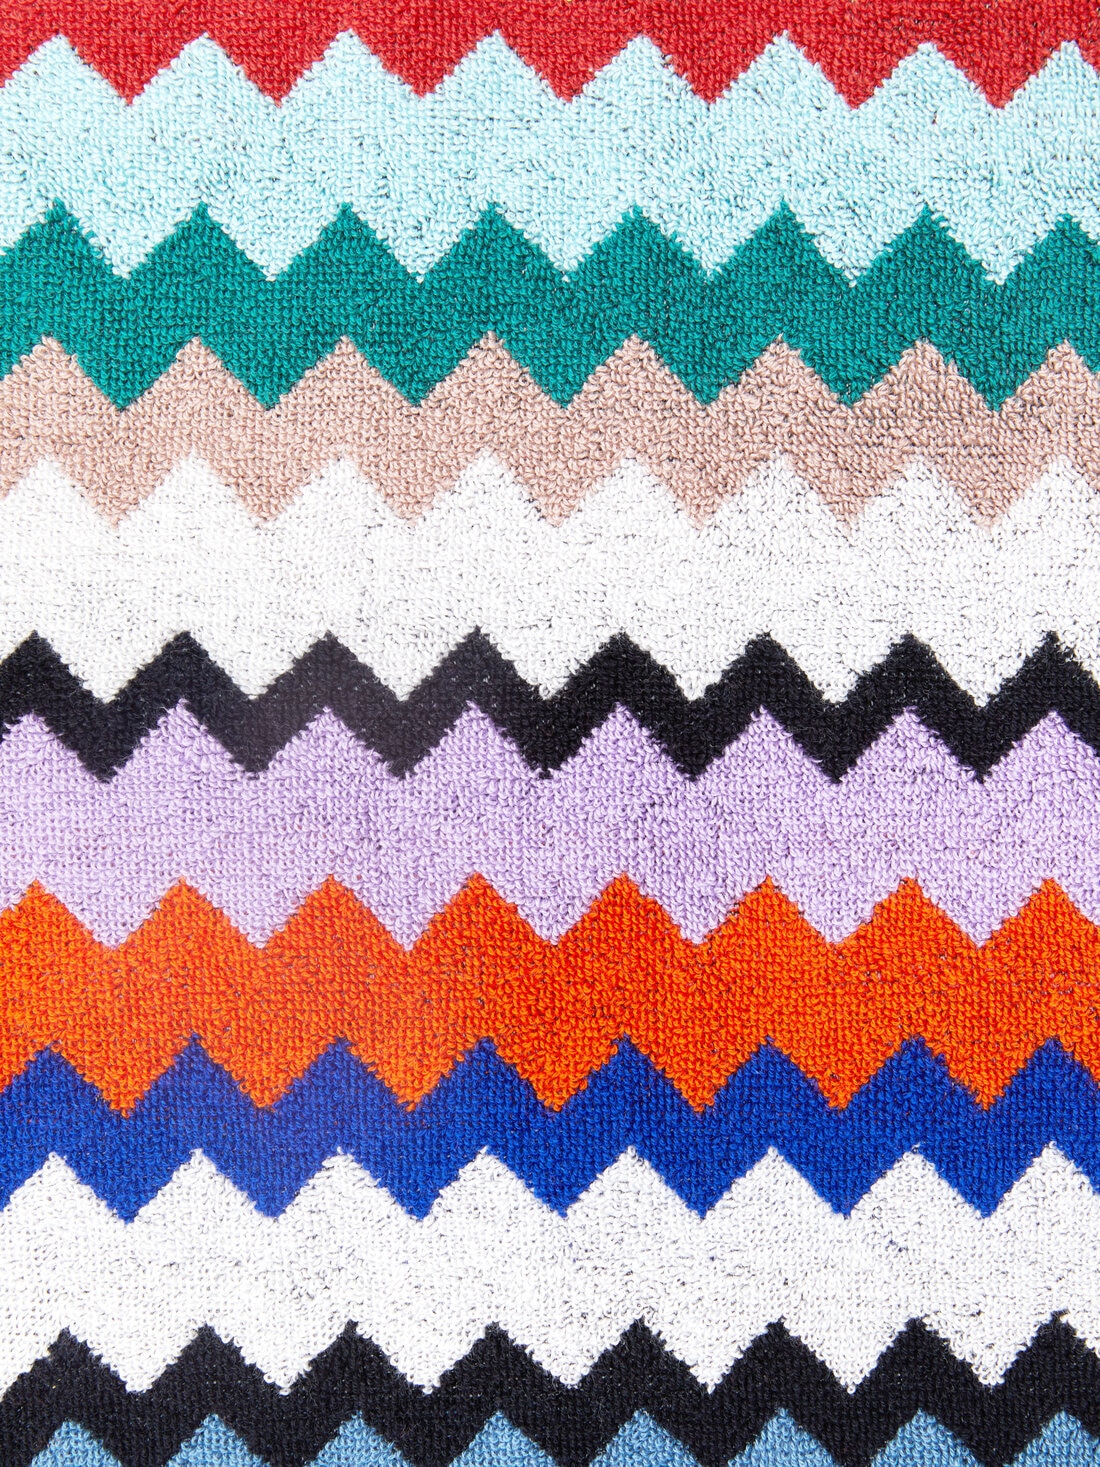 Riverbero 100x180 cm beach towel in zigzag cotton terry cloth, Multicoloured  - 8053147105291 - 3